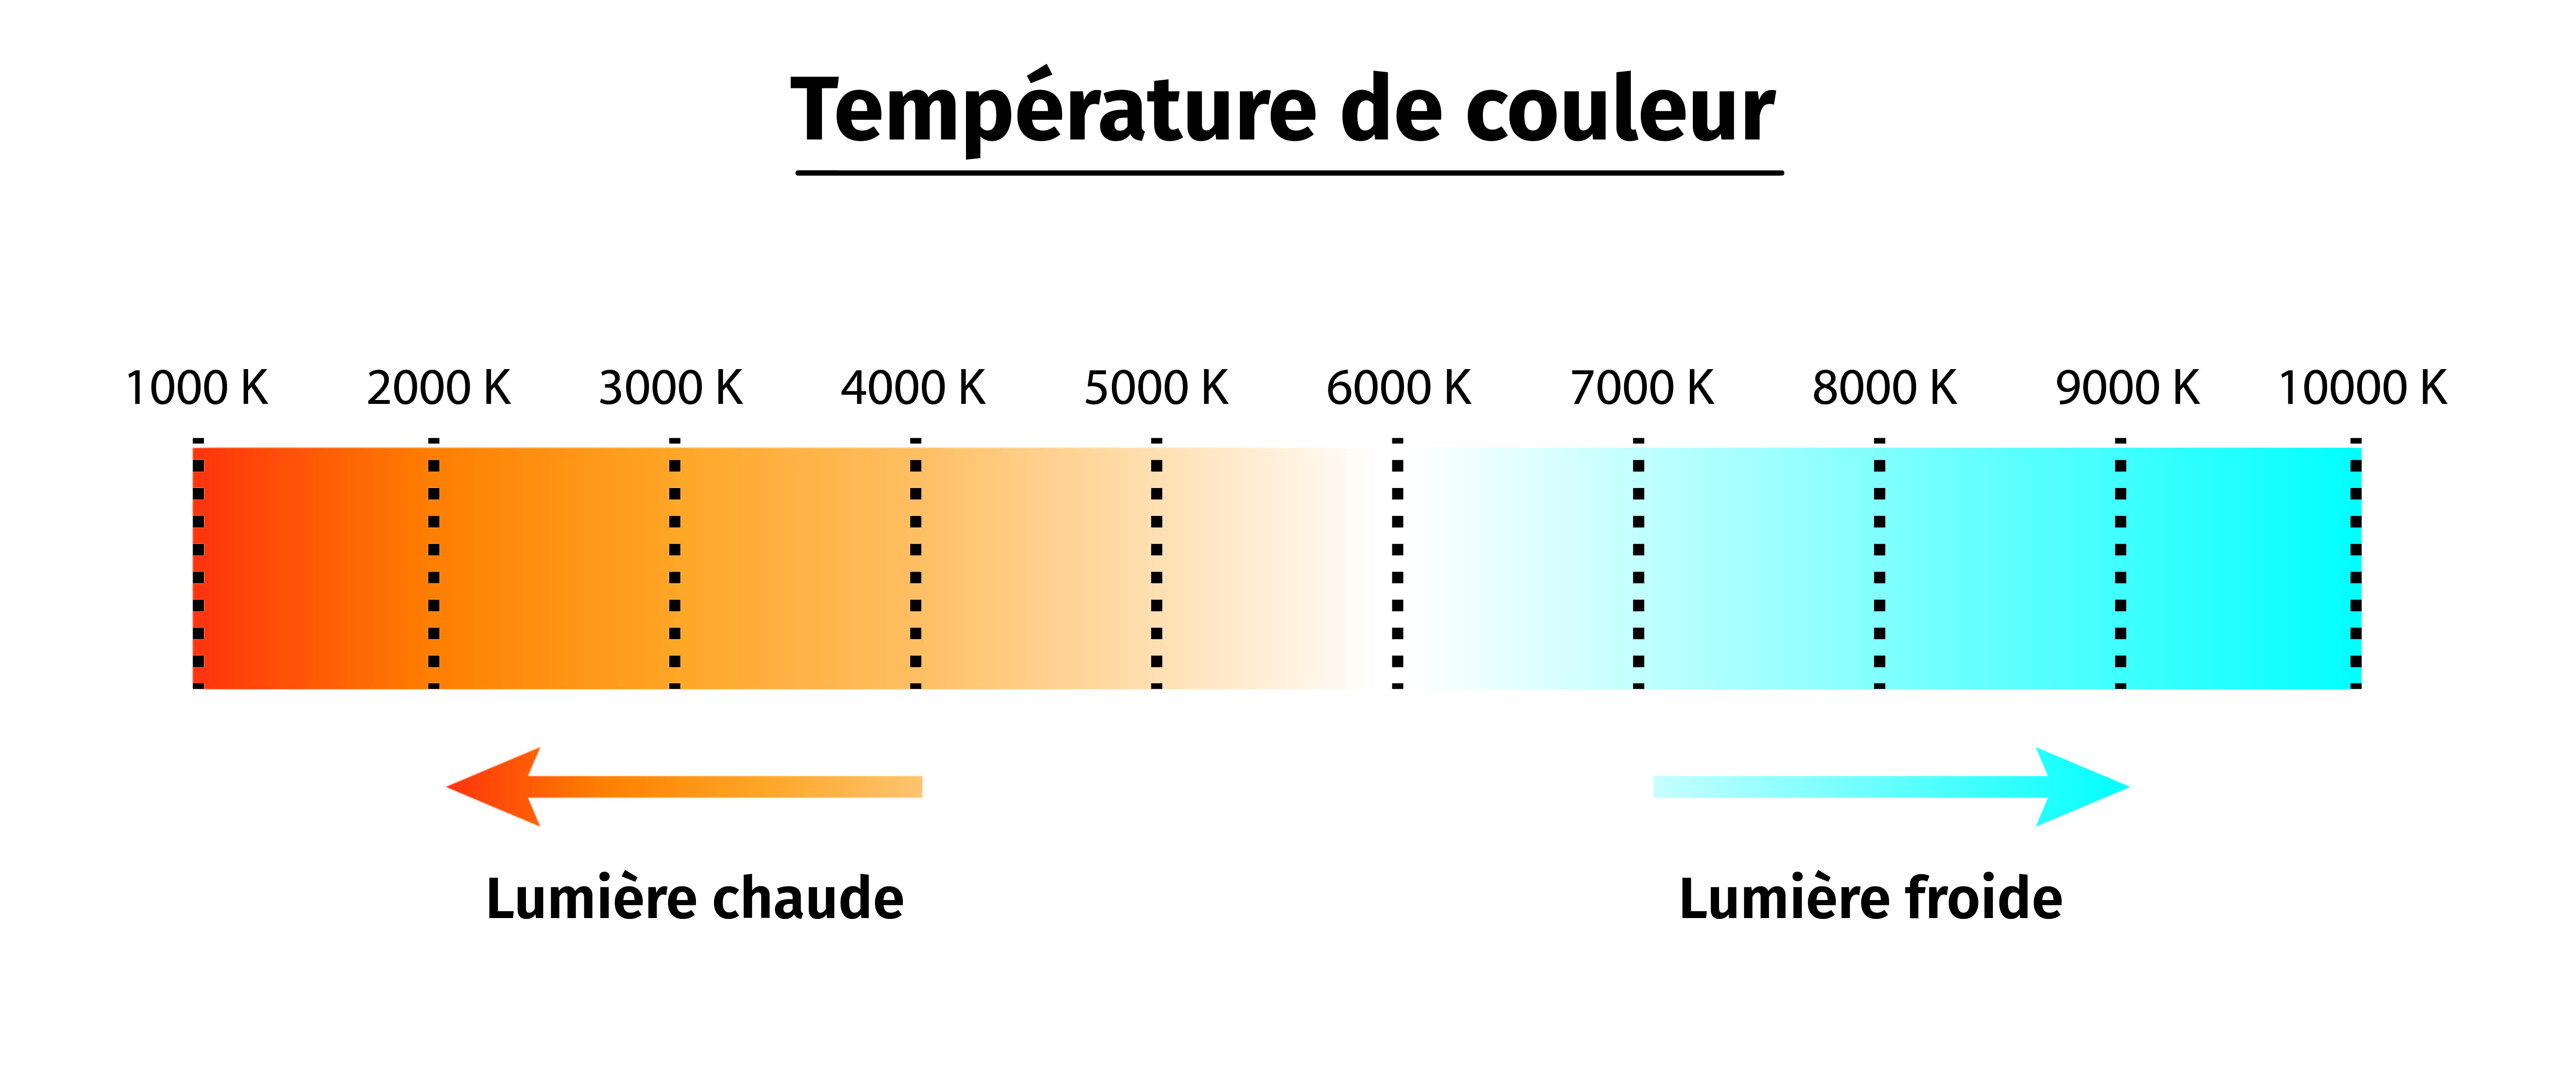 Comment choisir la bonne température de couleur pour son luminaire LED ?